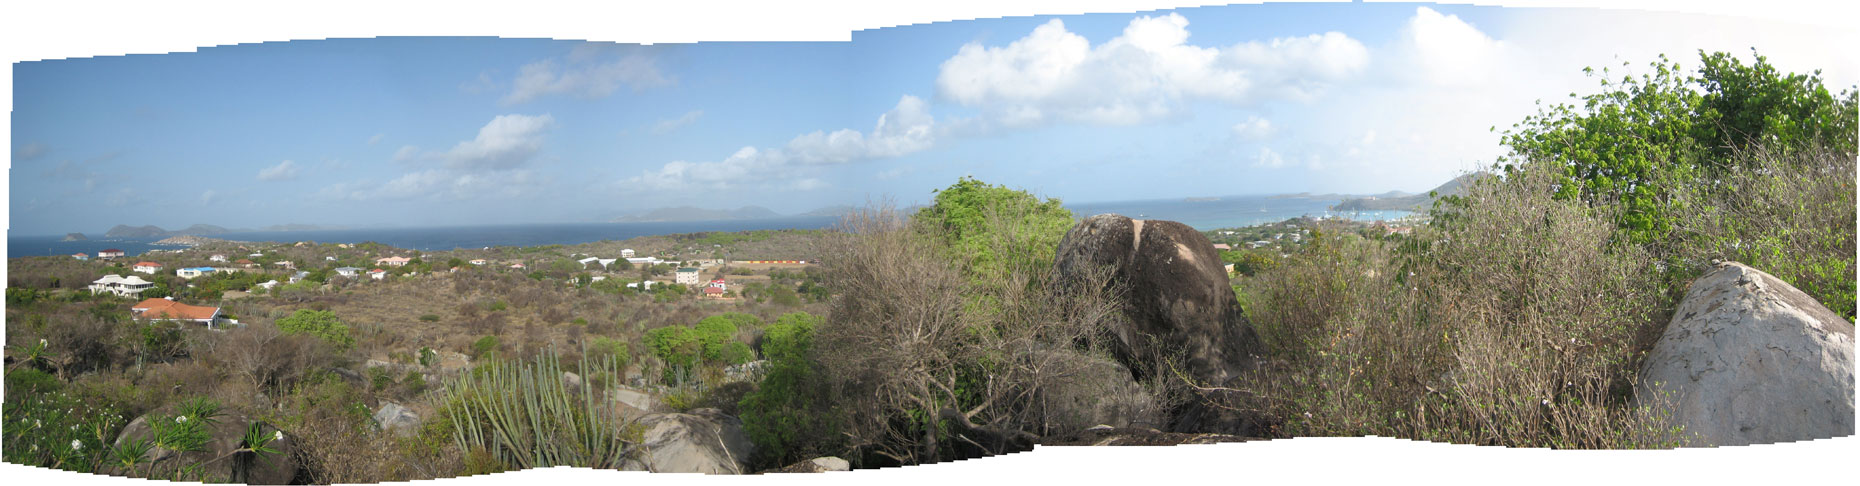 VG.caribbean-view